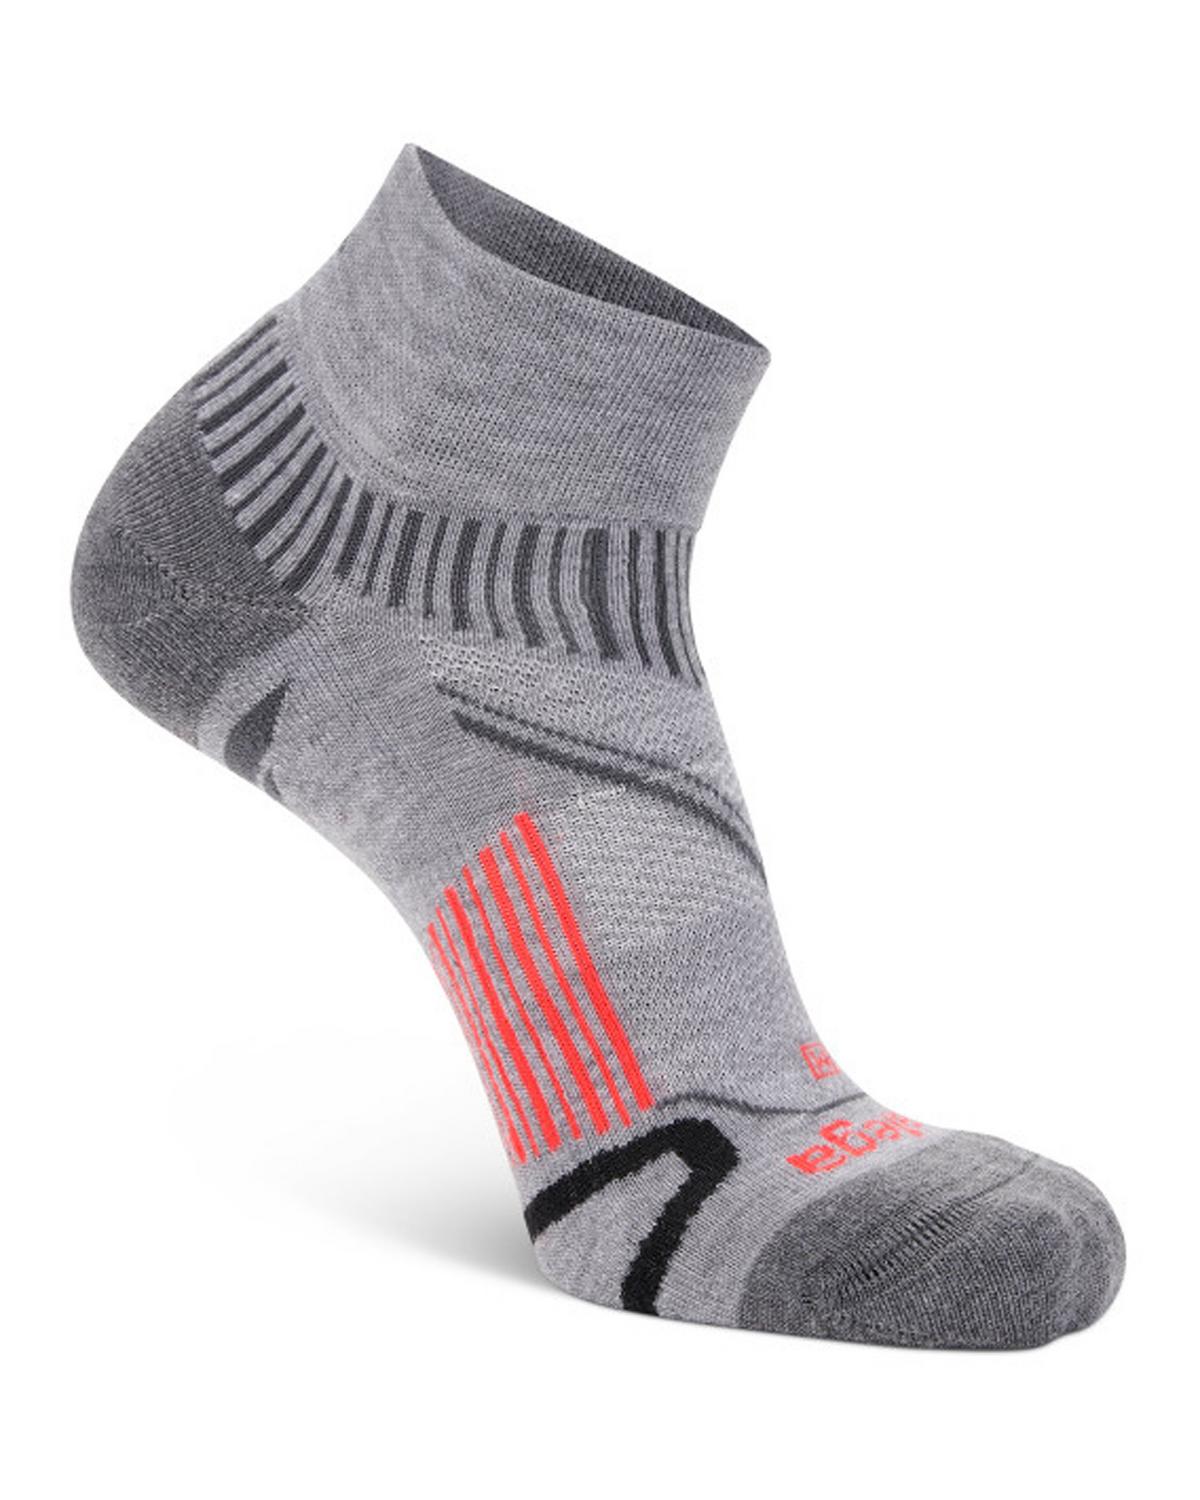 Balega Enduro Quarter Running Socks  -  Grey